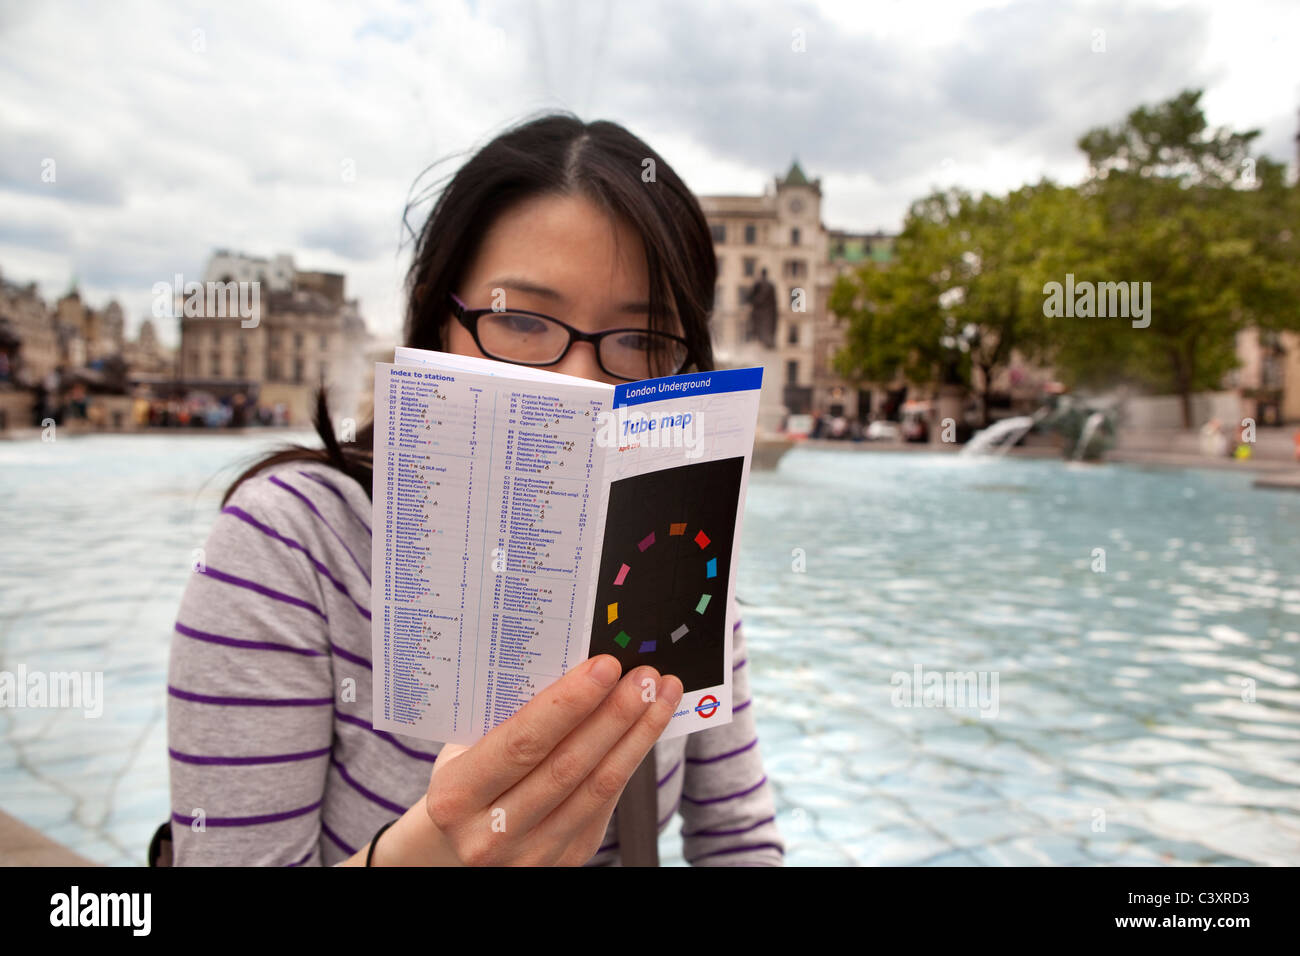 A tourist in Trafalgar Square. Stock Photo